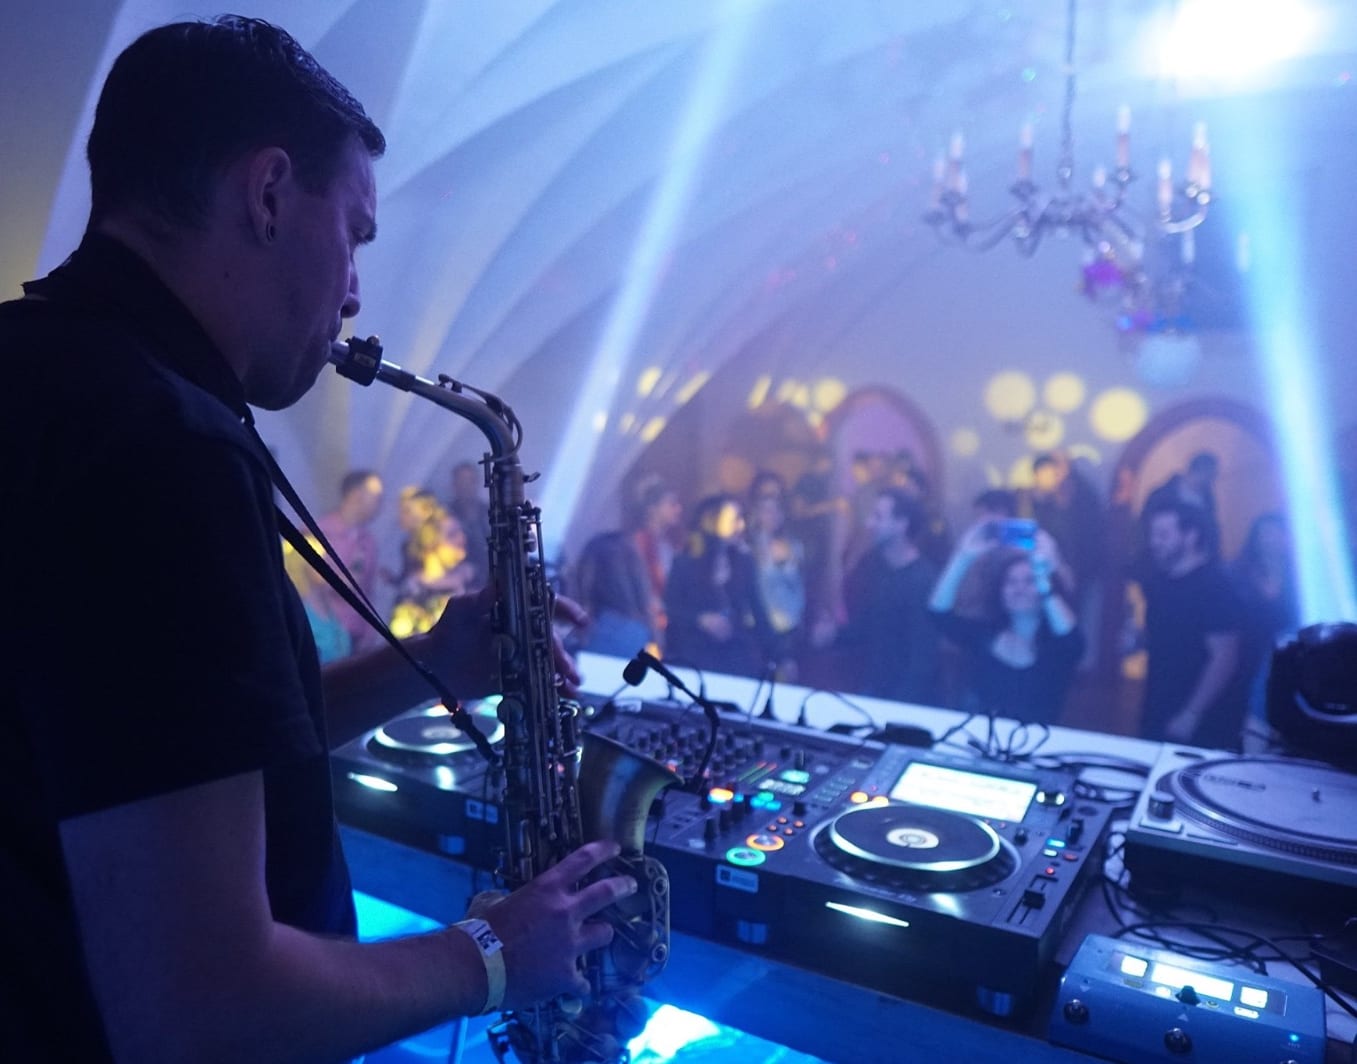 Marc Spieler Spielt sein Saxophon hinter dem DJ-Mischpult